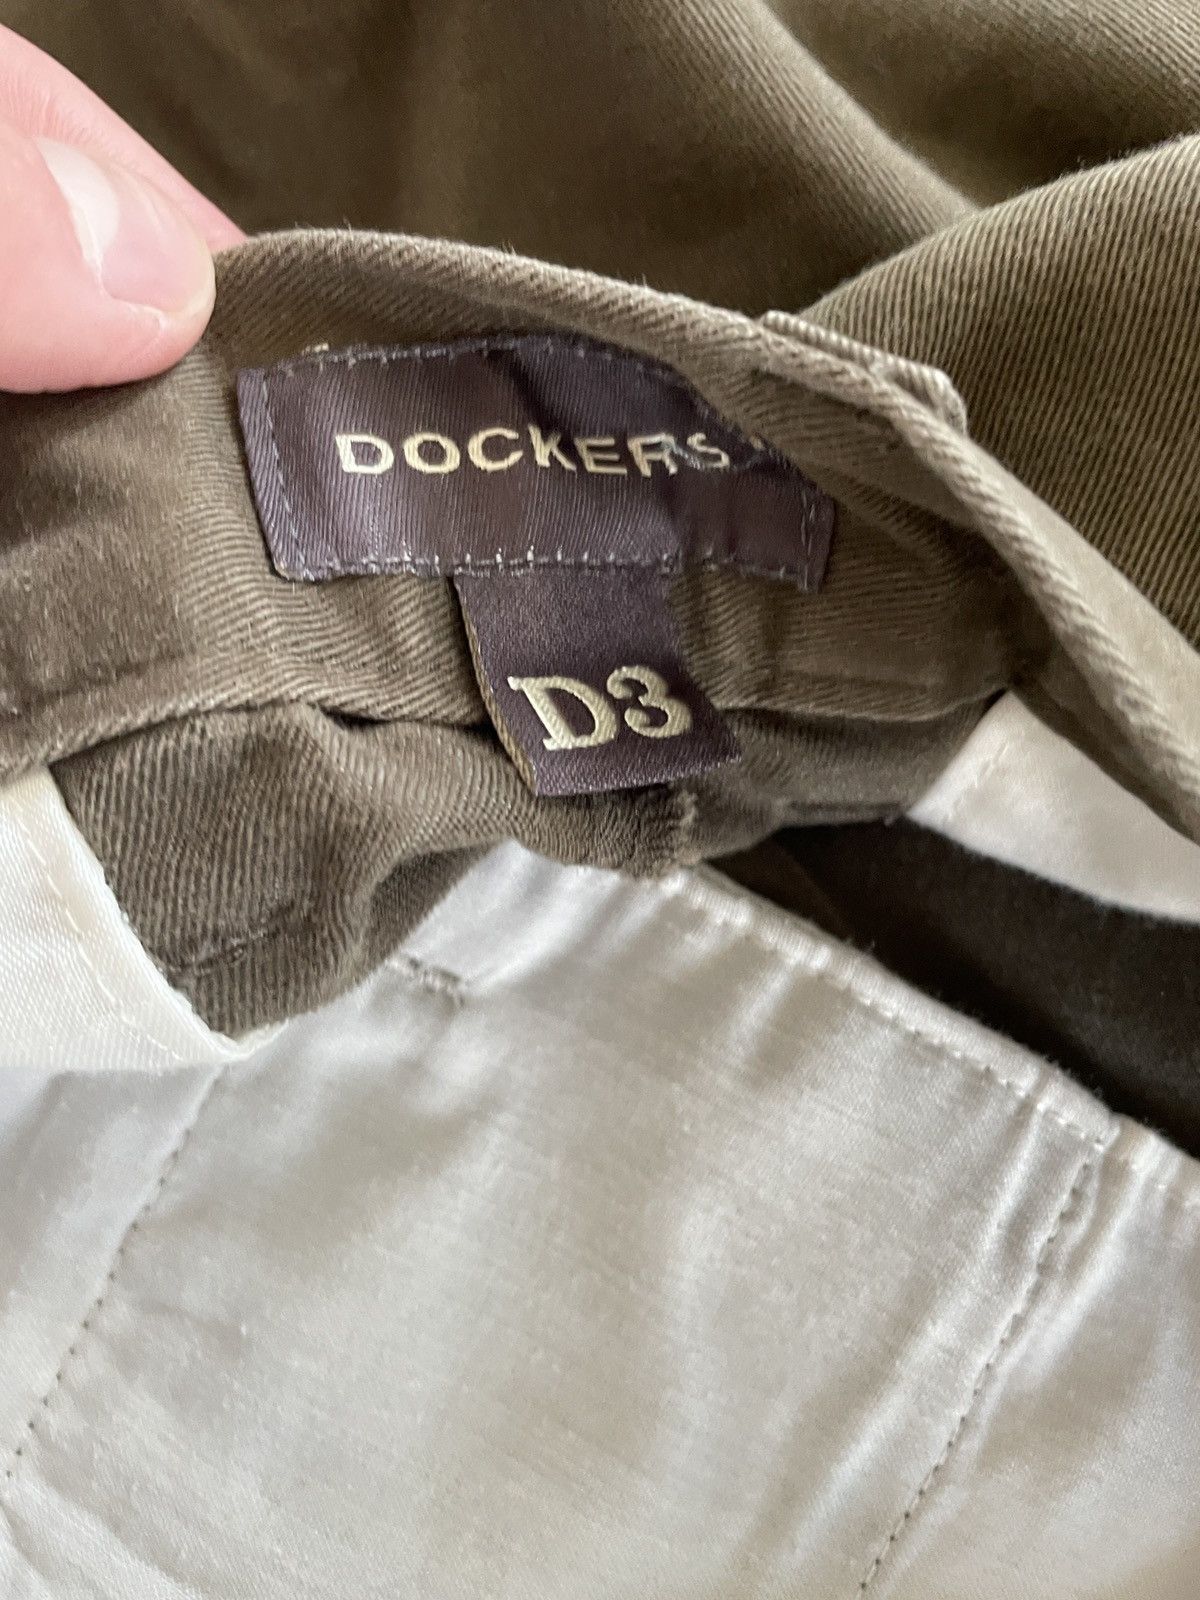 Vintage Dockers Khaki Pants Size US 34 / EU 50 - 4 Preview